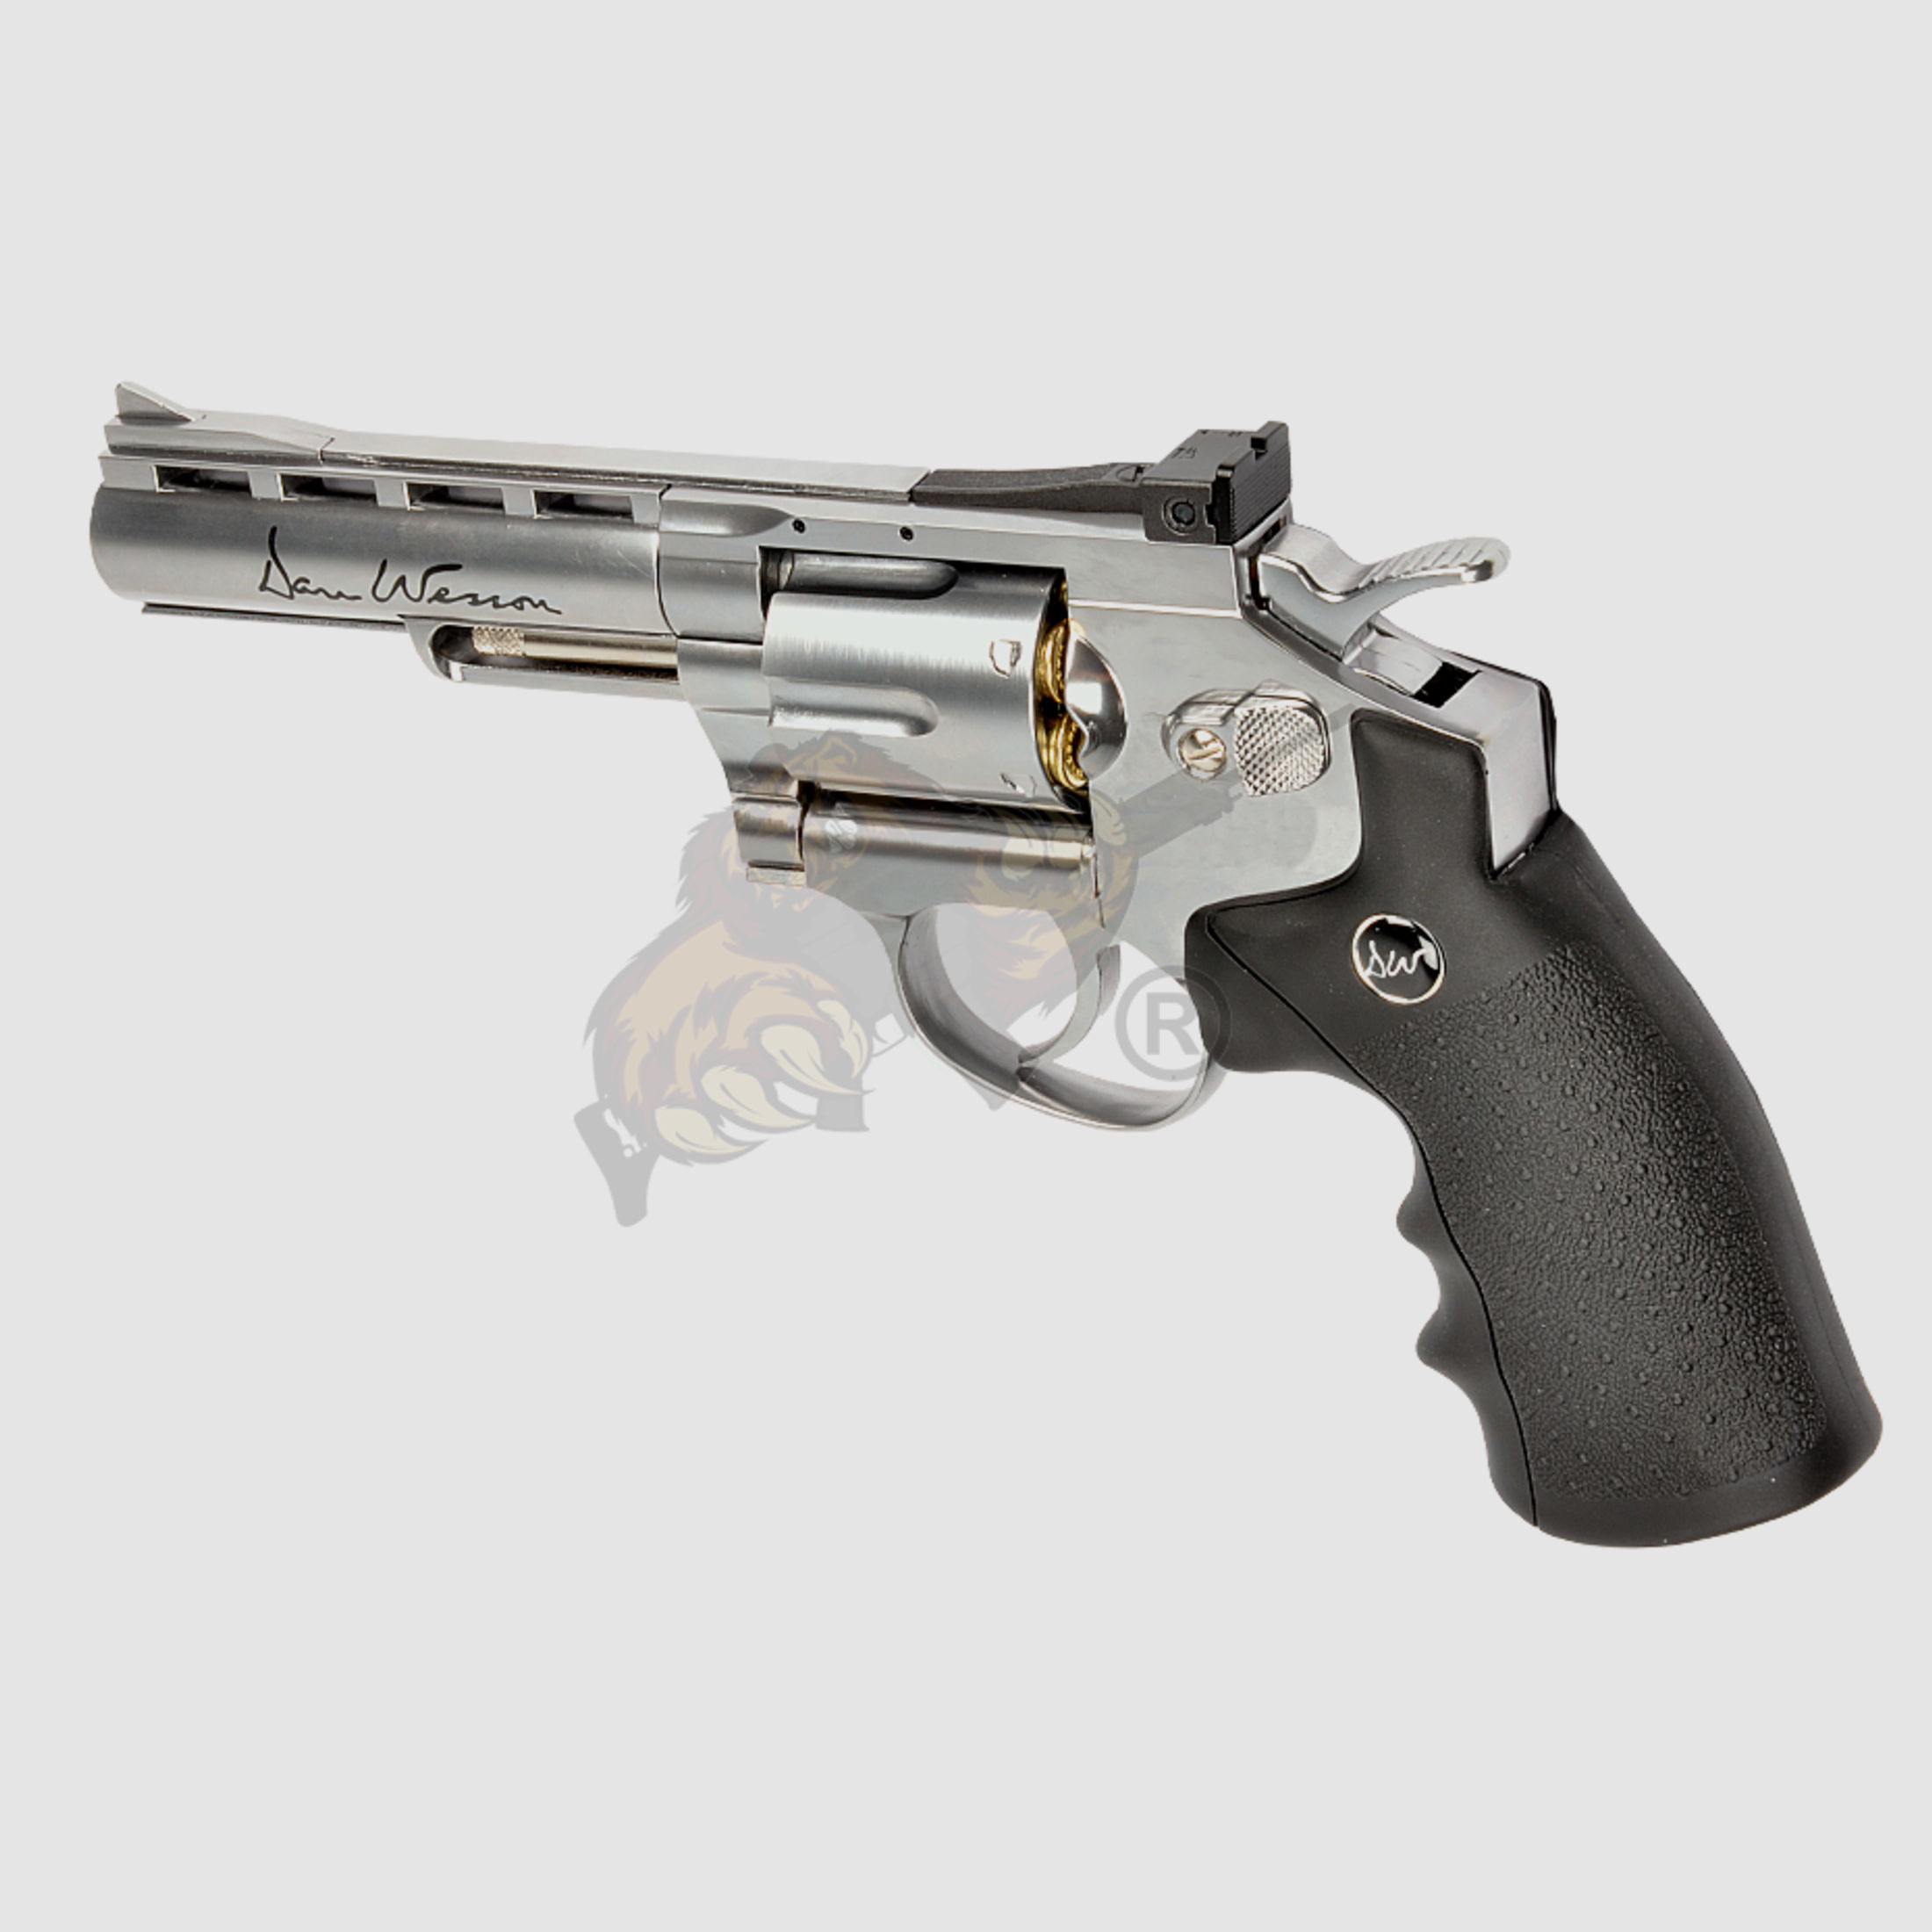 Dan Wesson Silver 4 Inch Revolver Full Metal Co2 -F-